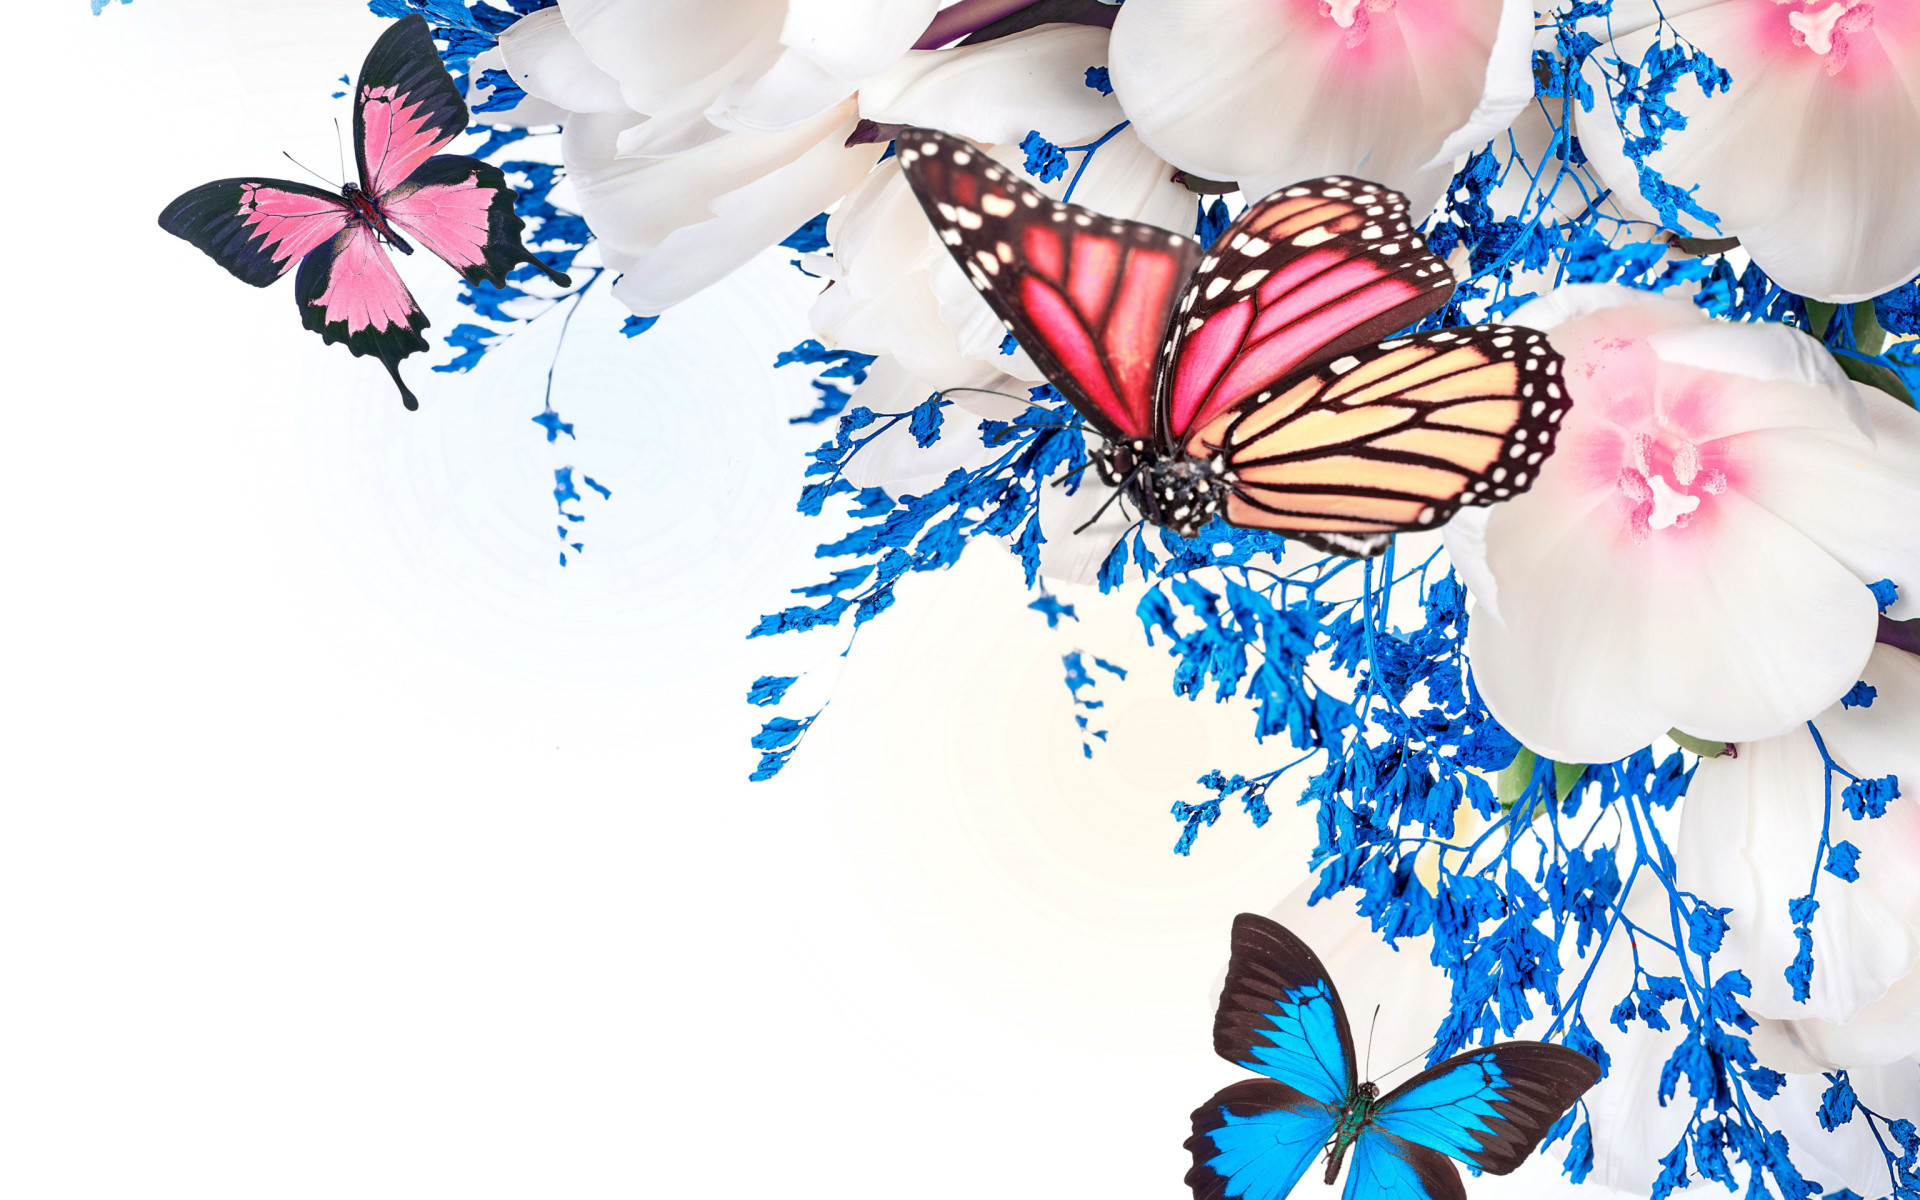 Hình nền của bướm: Muốn tập trung làm việc một cách hiệu quả nhưng không muốn bỏ qua sự đẹp mắt? Hãy nhấp chuột vào chiếc hình nền của bướm này và khám phá những đường cong hoa văn ấn tượng trong sắc màu ấm áp của động vật giữa thiên nhiên.